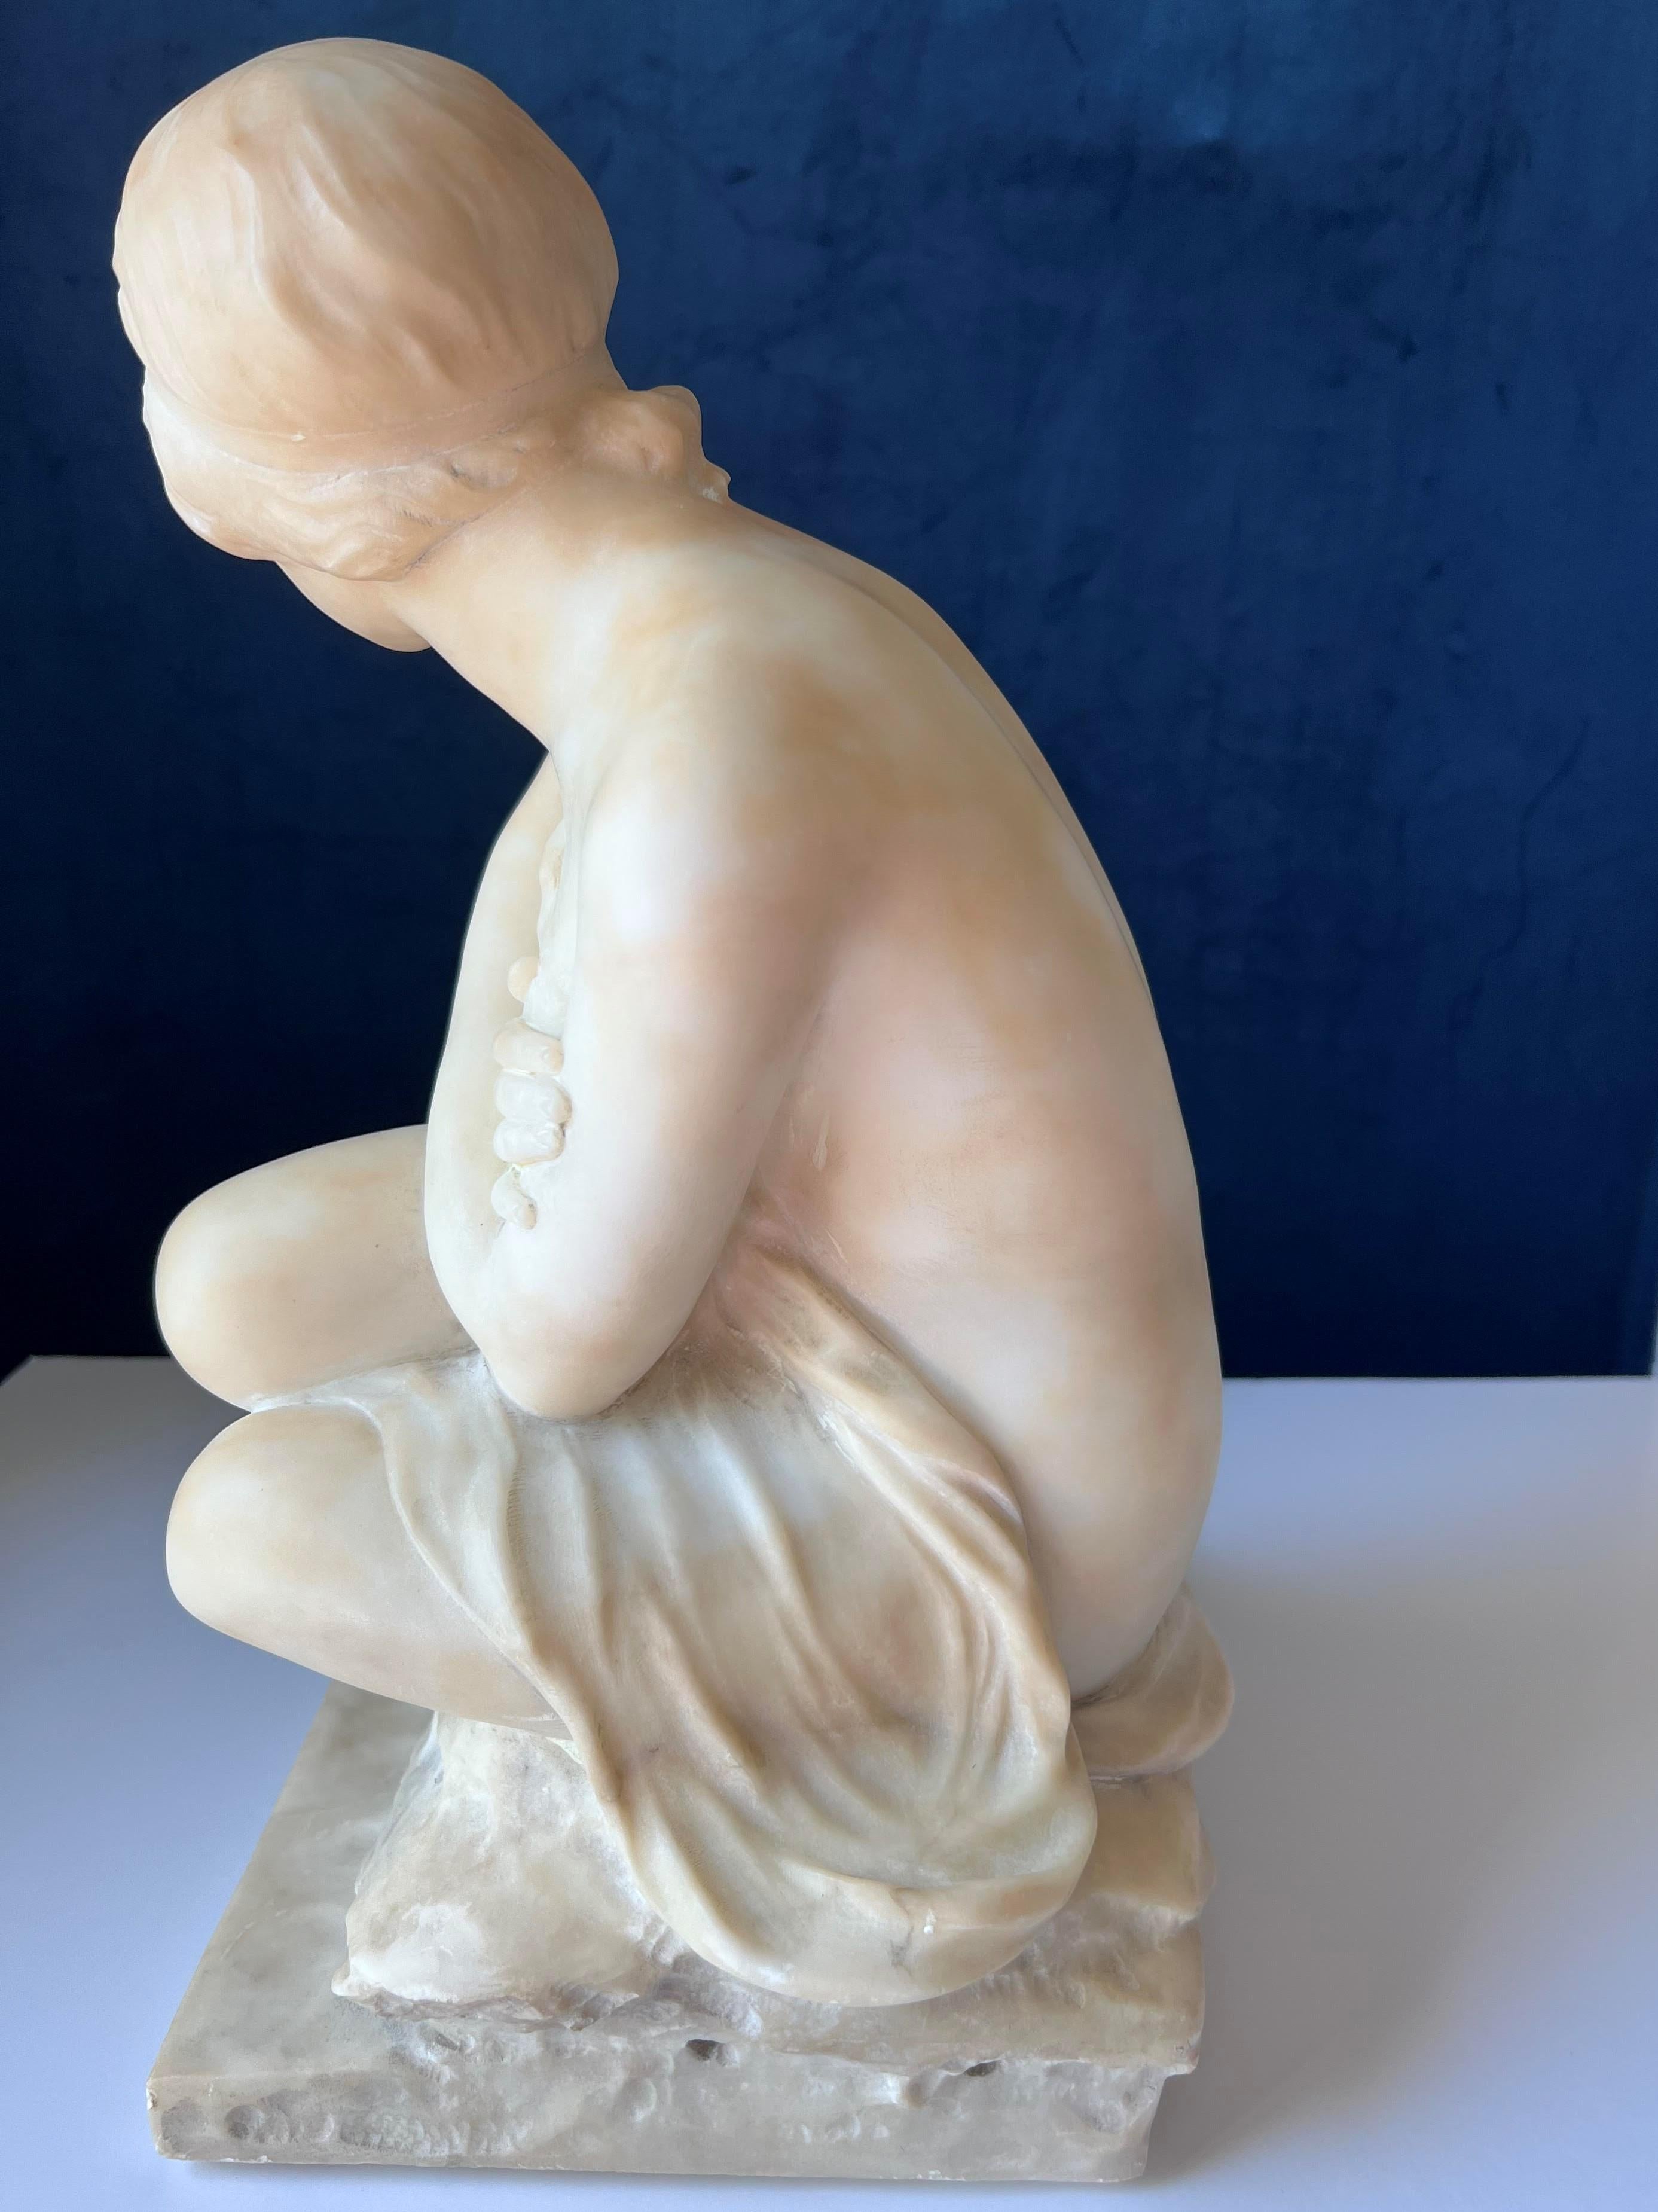 Anfang 20. Jh. Italienische Jugendstil-Alabaster-Skulptur einer jungen Badenden.  Der Badende sitzt mit verschränkten Armen in bescheidener Pose auf einem Stein.  Der Badende ist halbnackt.  Einige kleinere Schrammen und Kratzer.  Die Skulptur ist